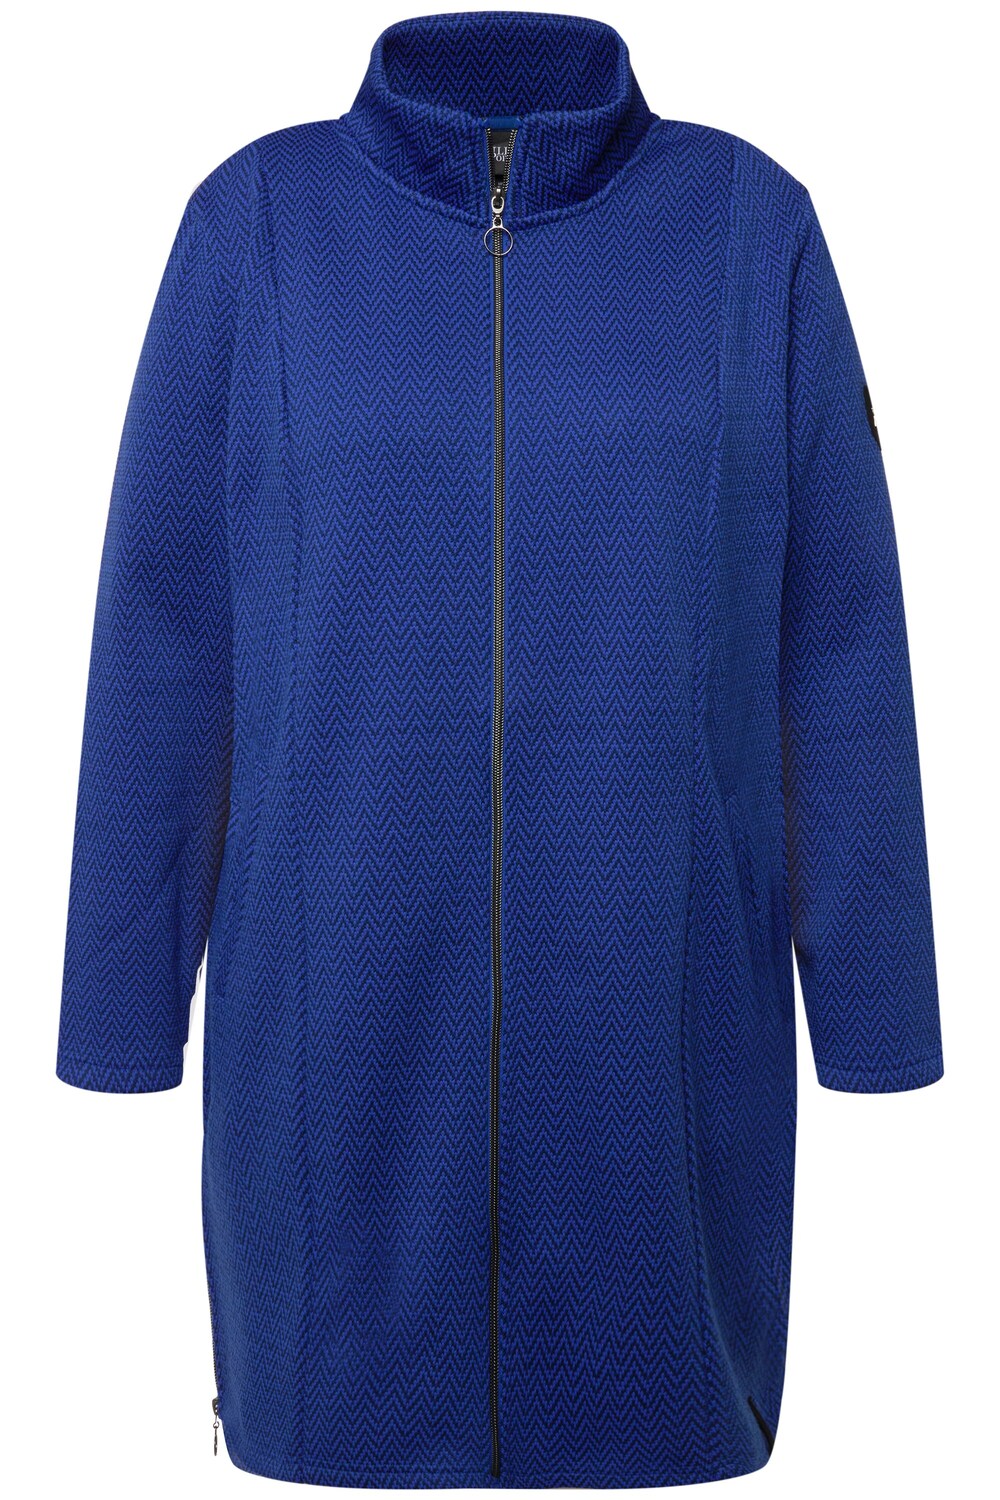 Межсезонное пальто Ulla Popken, морской синий межсезонное пальто ulla popken пестрый коричневый